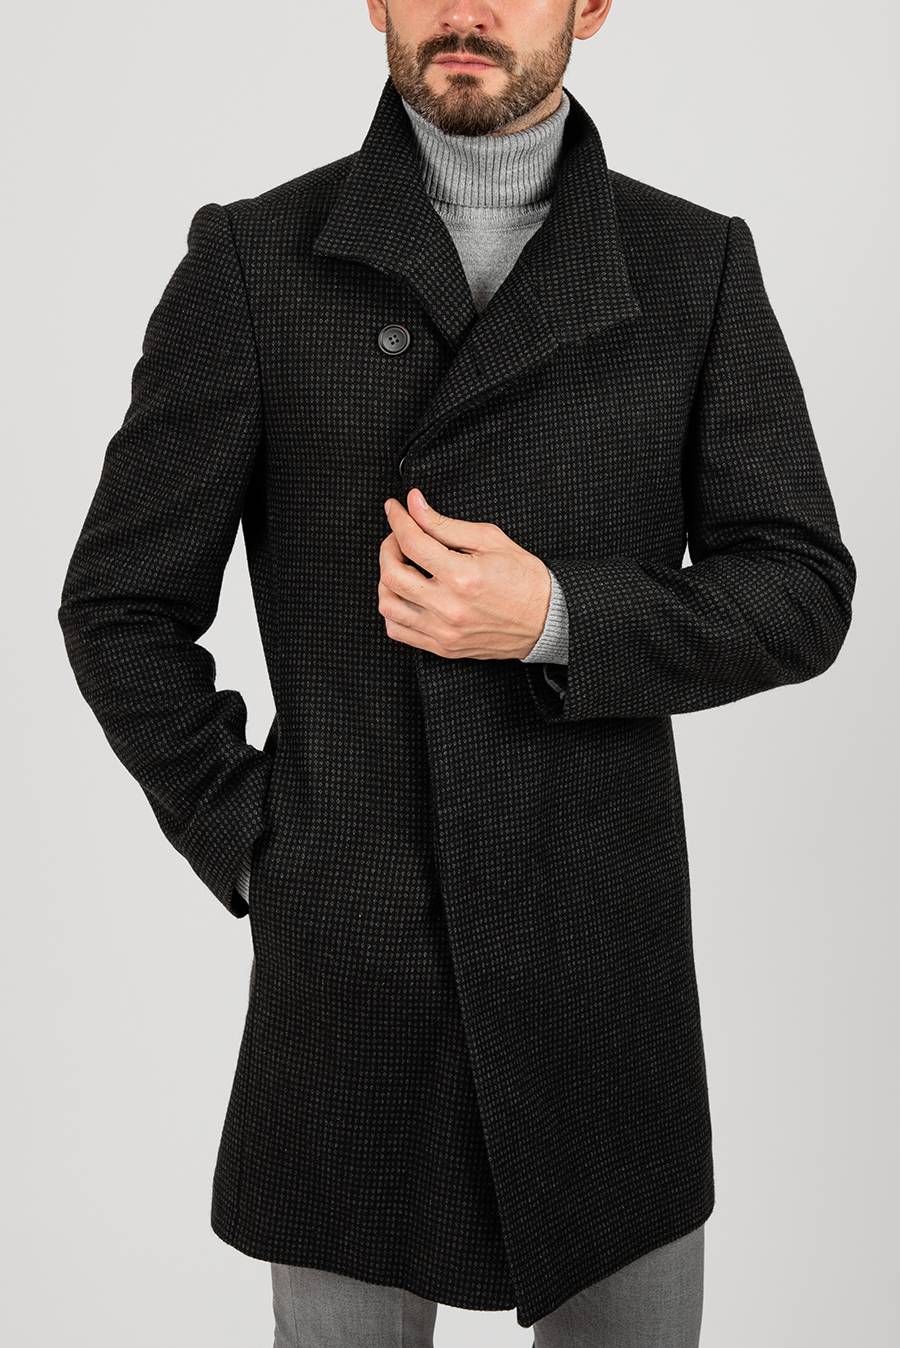 Как выбрать пальто мужчине по размеру. выбираем мужское пальто.